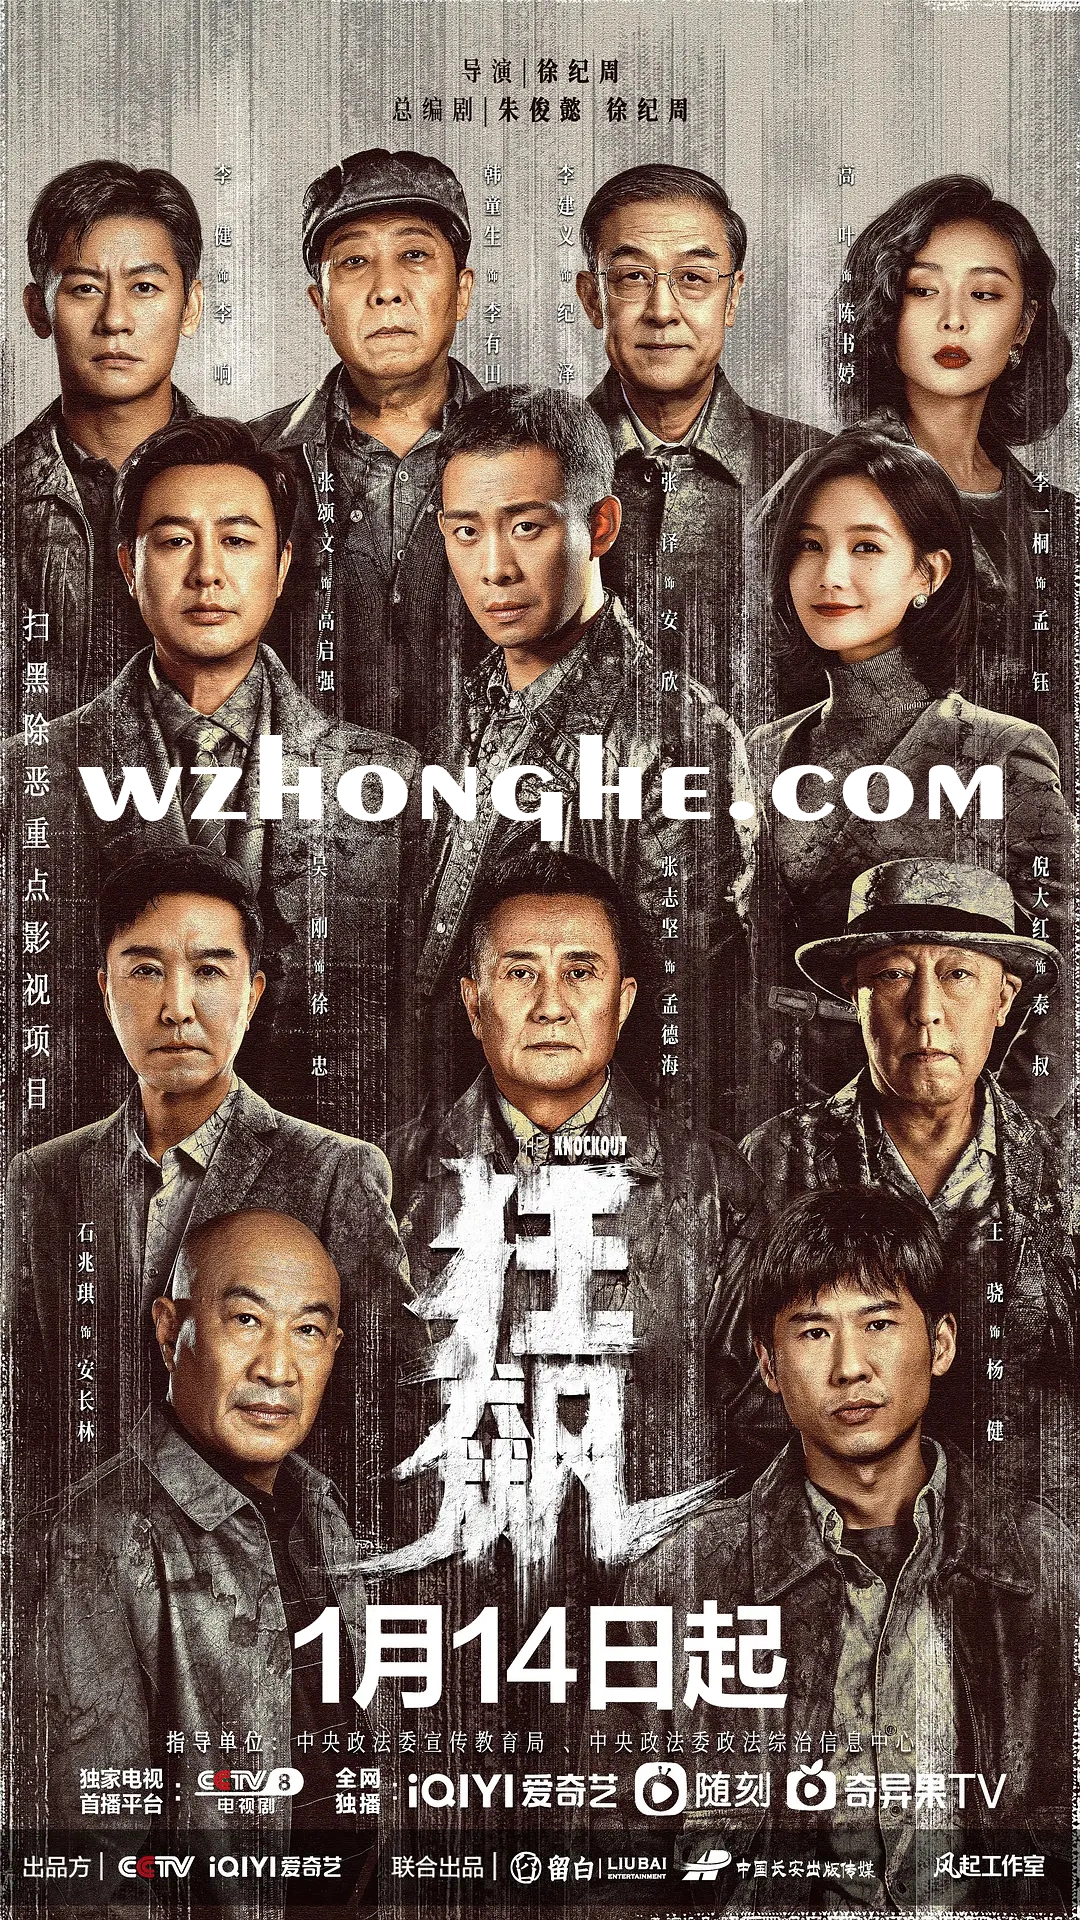 《狂飙》- 无中和wzhonghe.com